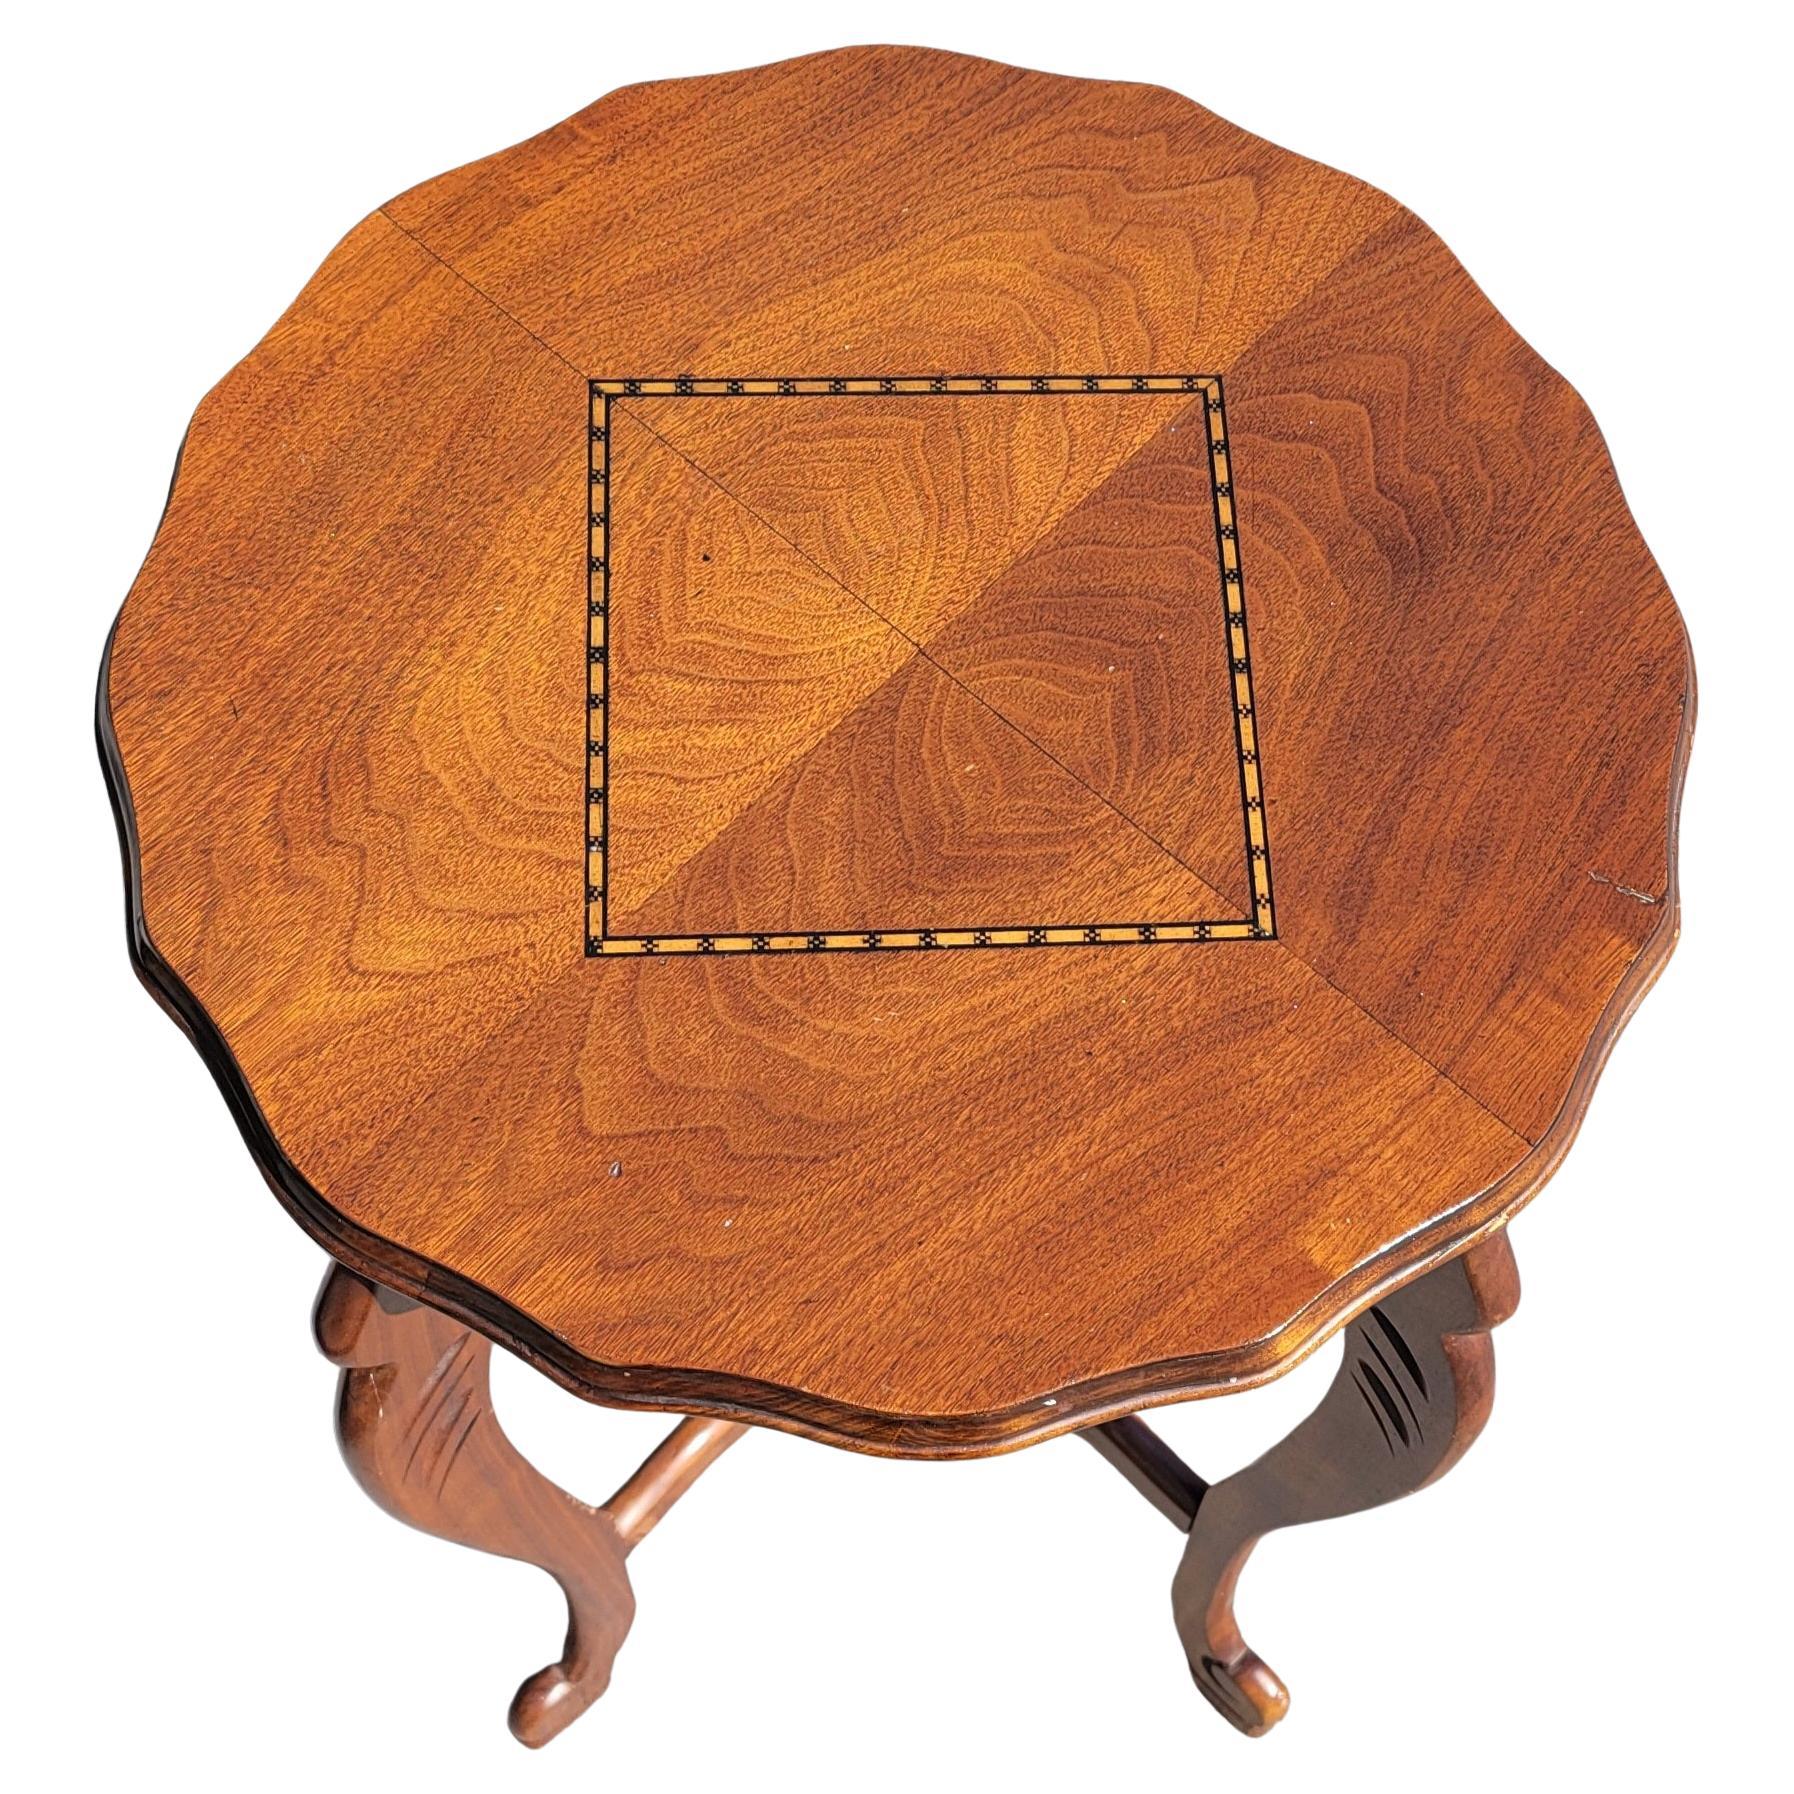 Ein wunderschönes Vintage wellenförmige Kante Nussbaum bookmatched und Intarsien oben Beistelltisch mit unteren Basis Bahre. Sehr stabiler Tisch mit einem Durchmesser von 17